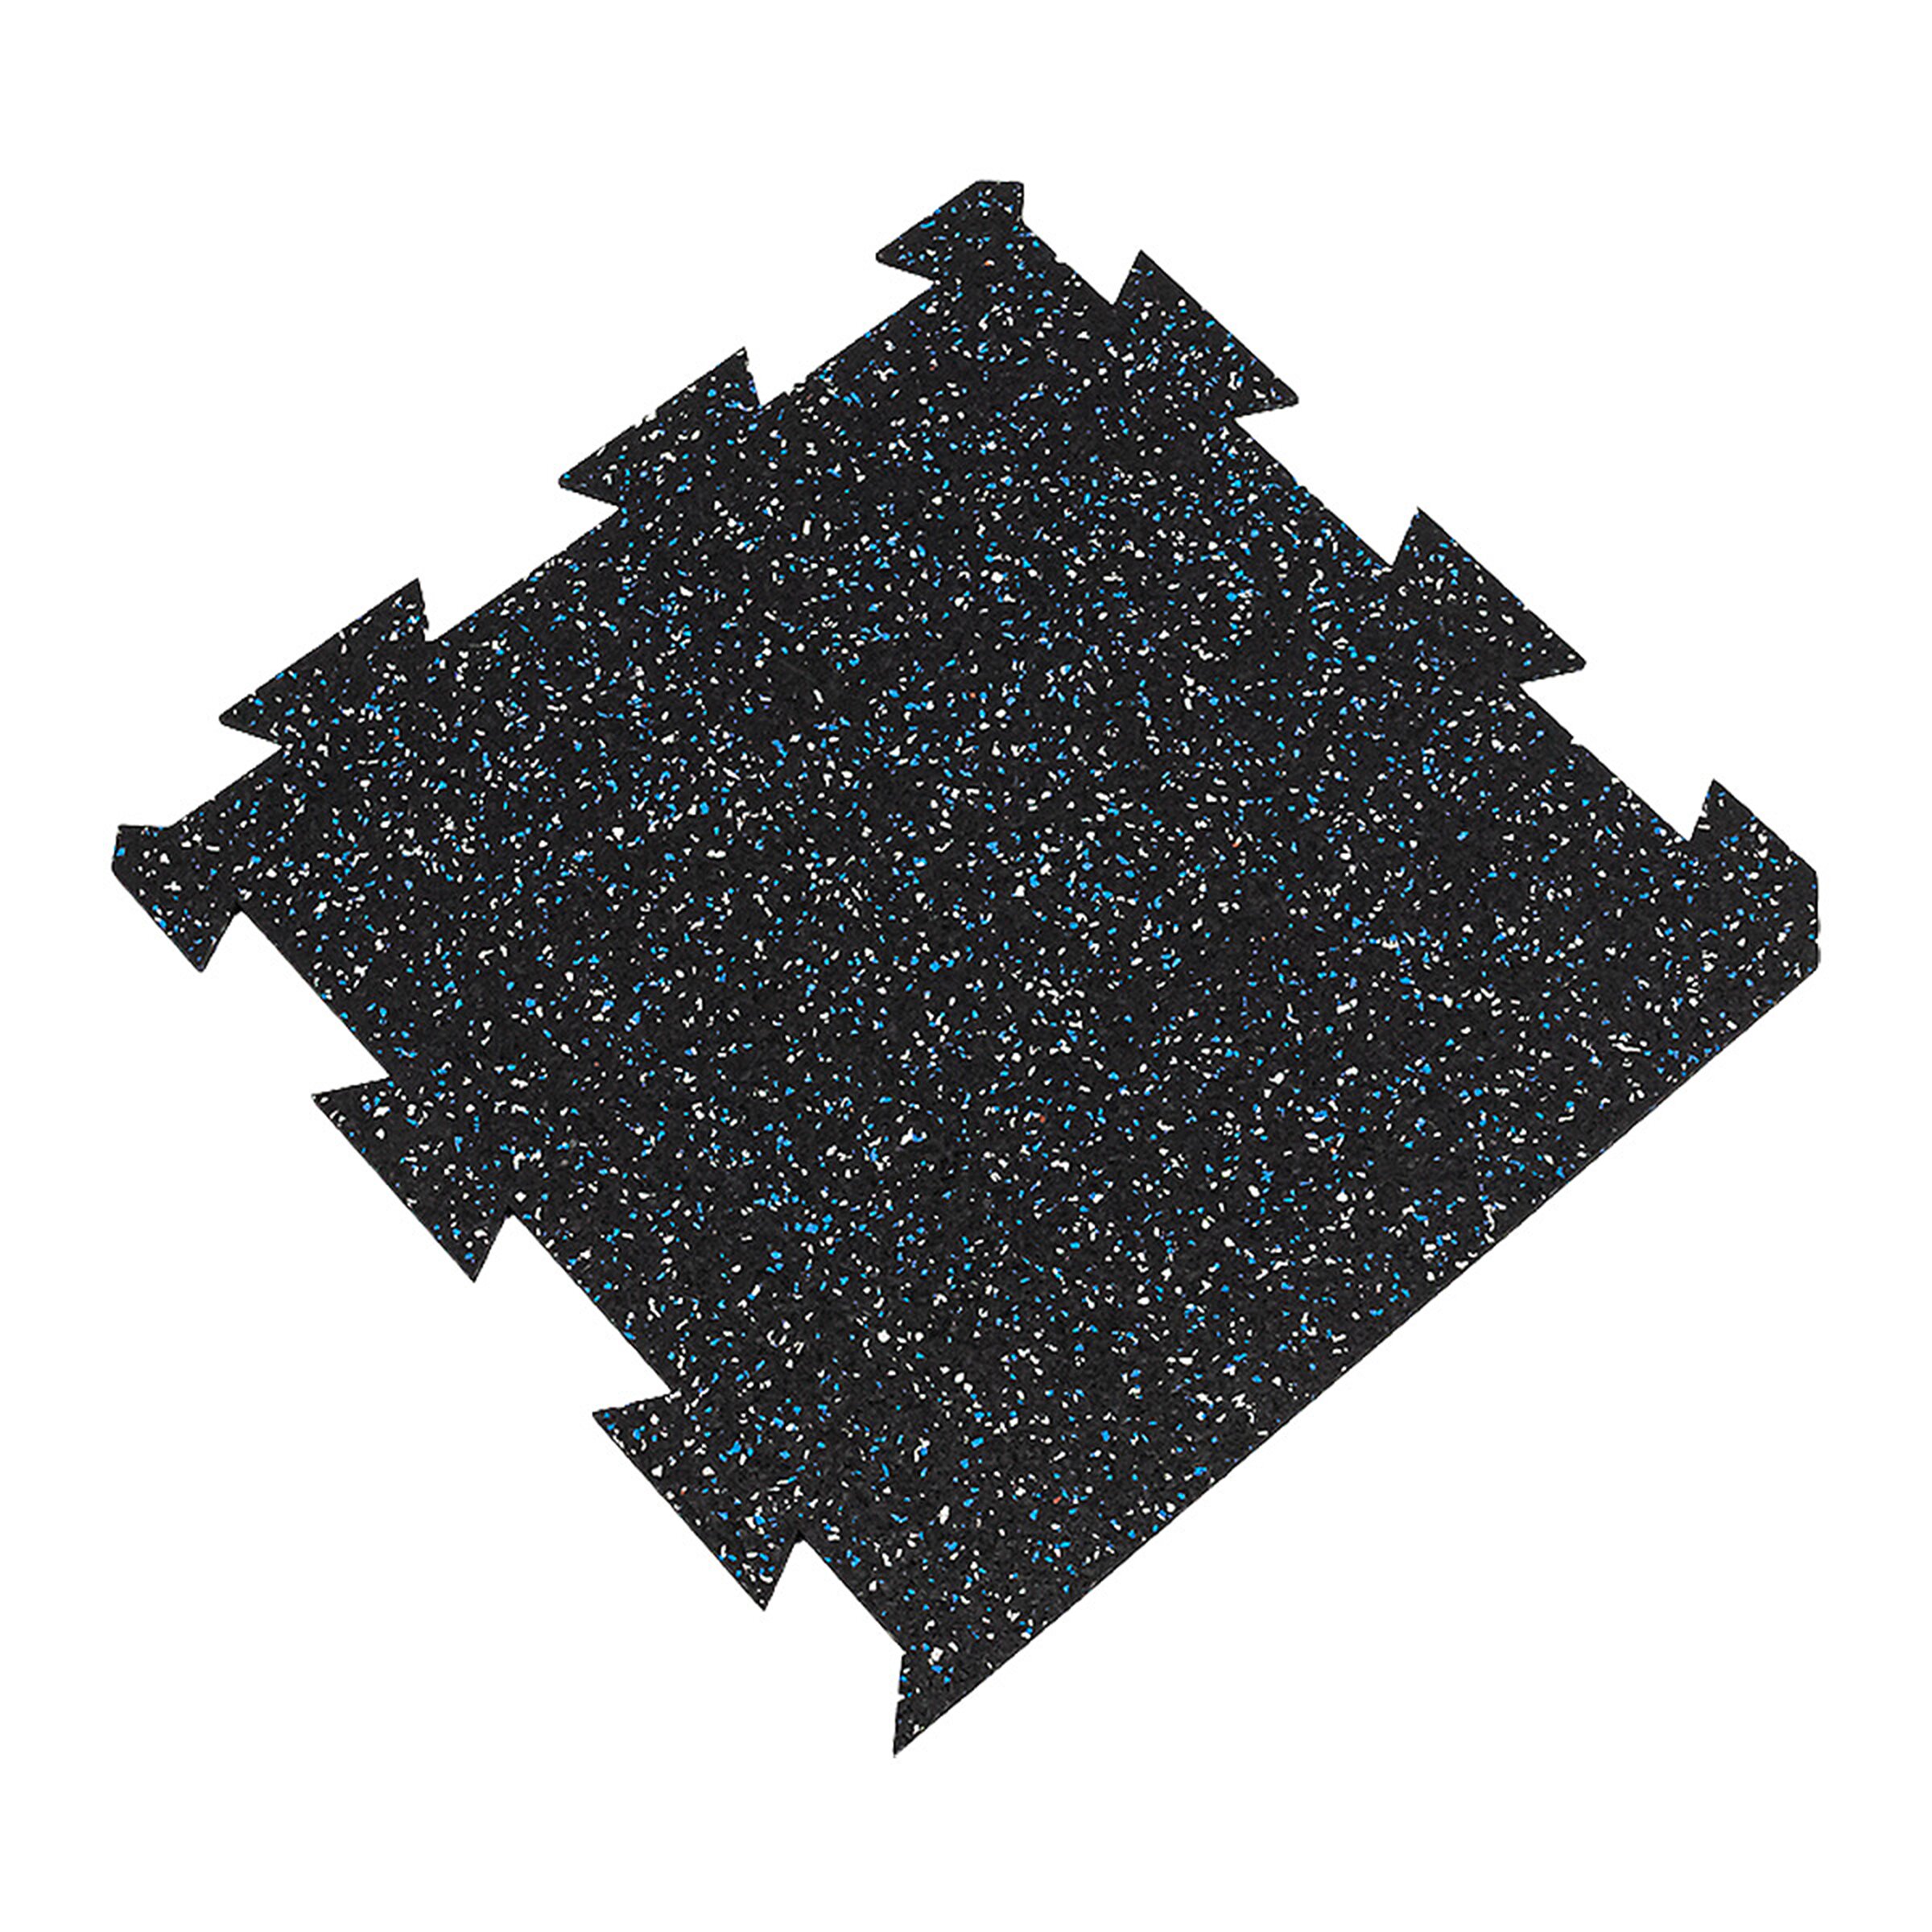 Čierno-bielo-modrá gumová modulová puzzle dlažba (okraj) FLOMA FitFlo SF1050 - dĺžka 50 cm, šírka 50 cm a výška 0,8 cm